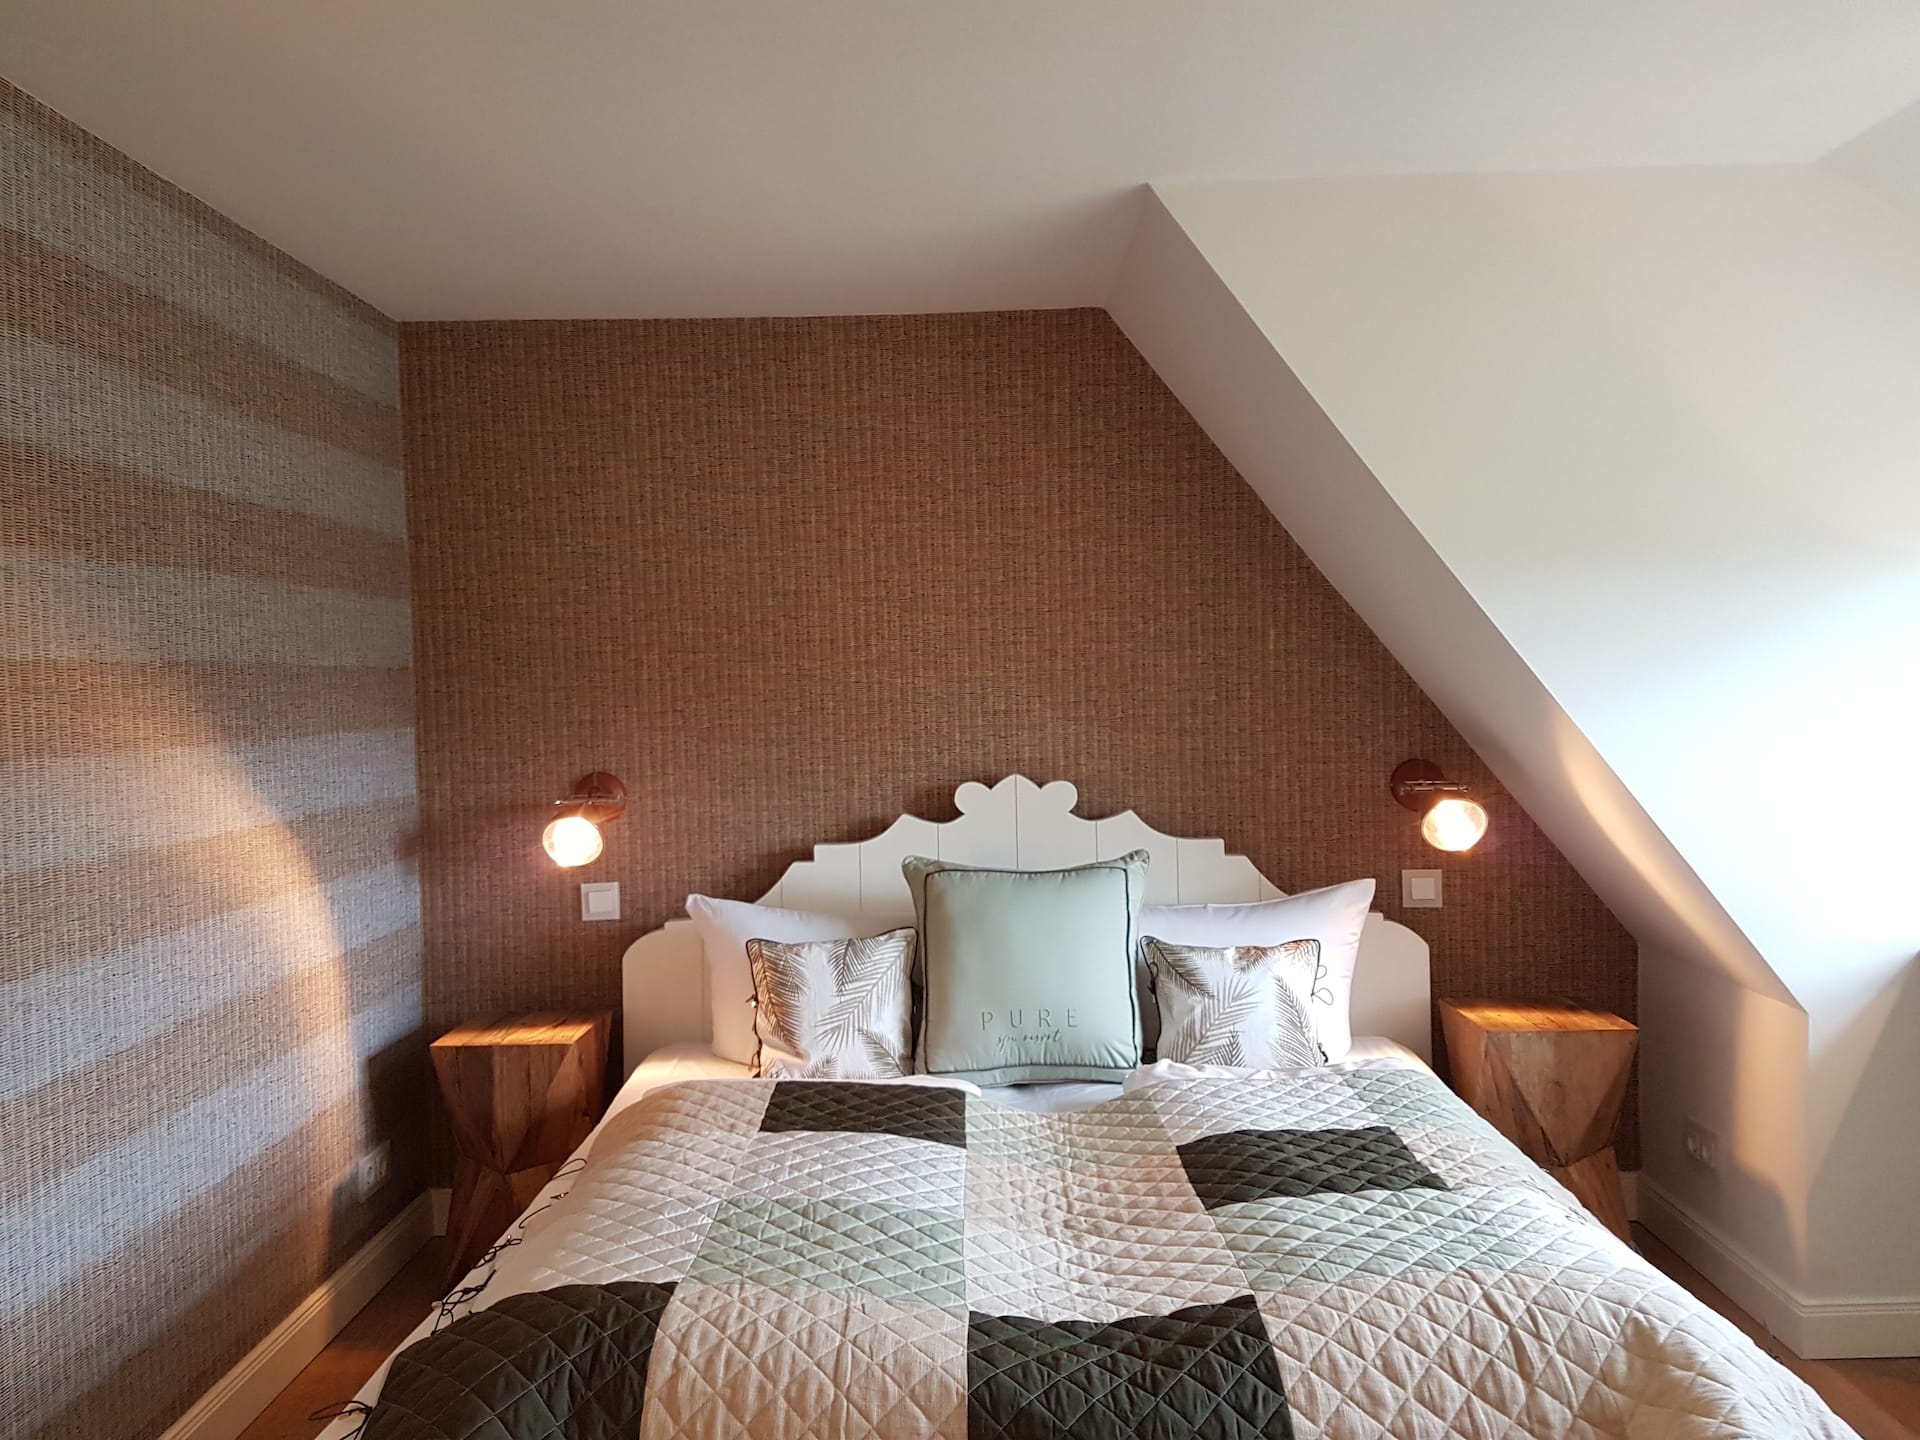 Drittes Schlafzimmer mit Doppelbett im "Seaside II" Ferienhaus in Rantum auf Sylt